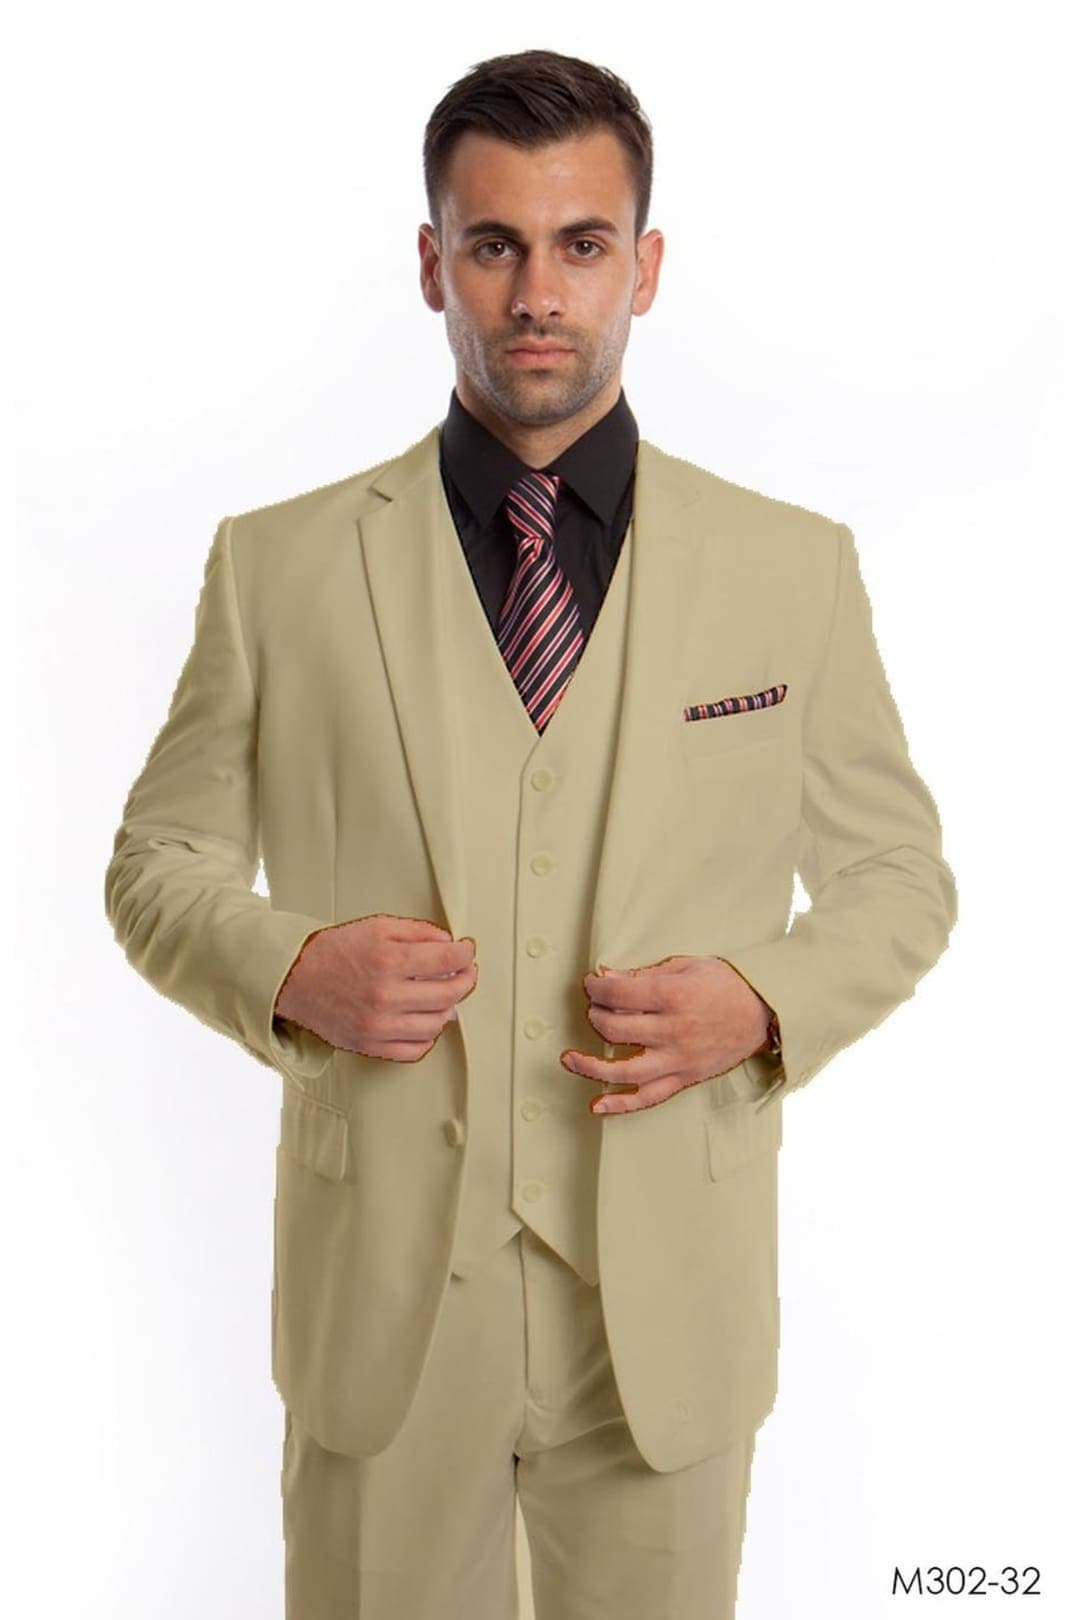 Modern Fit 3 Piece Suit - SAND - 32 / US34S/W28 / EU44S/W38 - Mens Suits